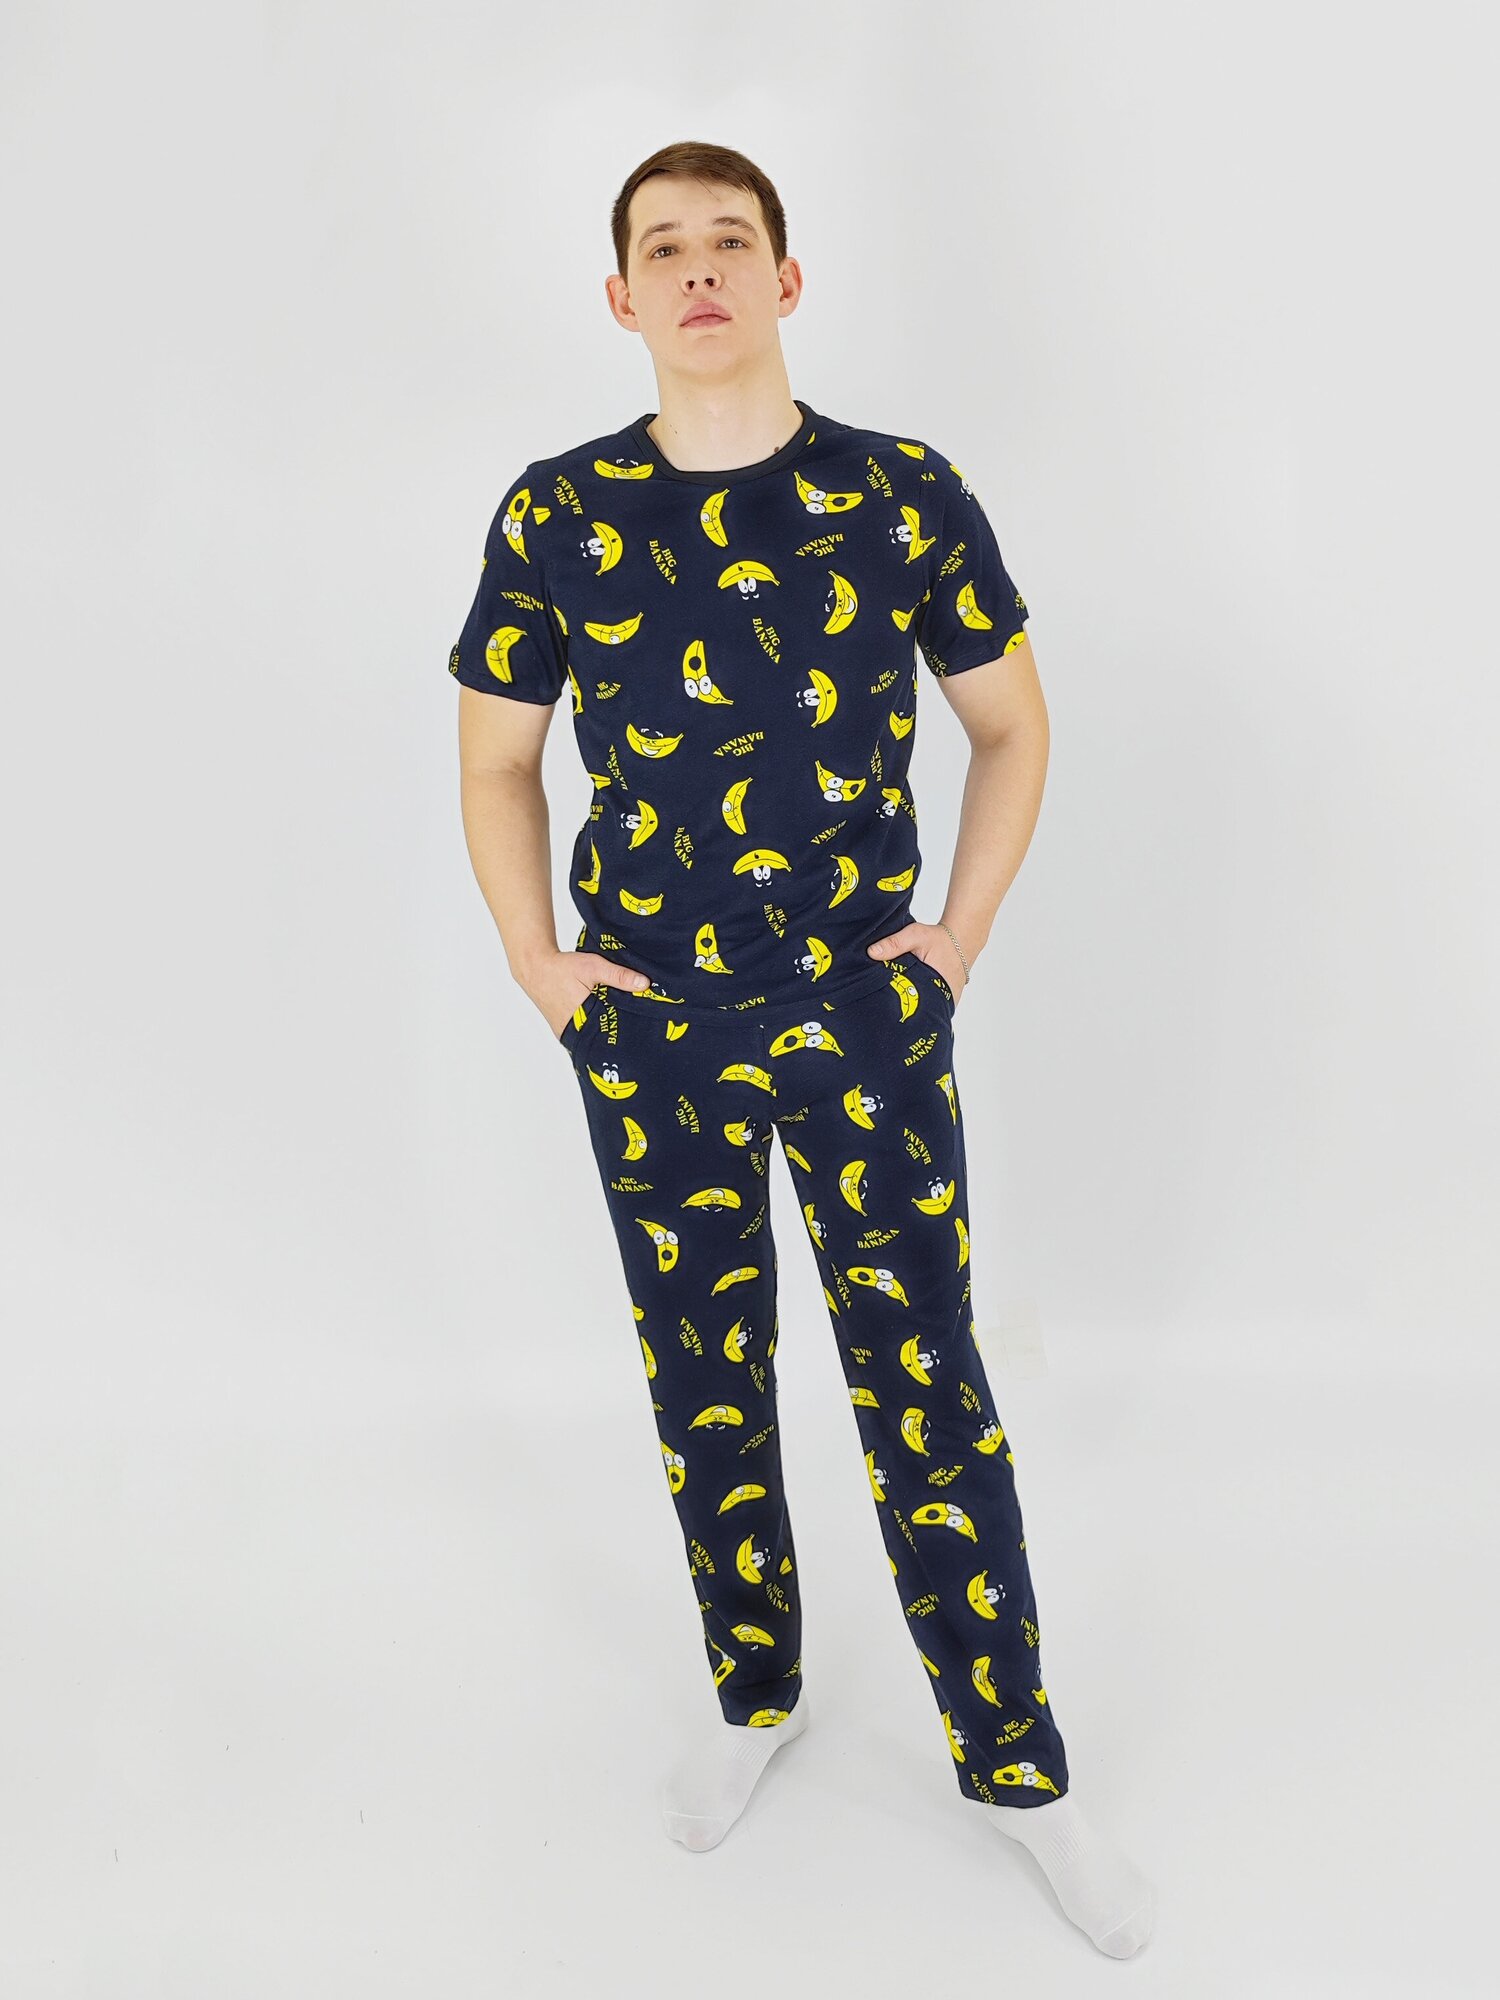 Мужская пижама, мужской пижамный комплект ARISTARHOV, Футболка + Брюки, Бананчик, синий желтый, размер 46 - фотография № 2